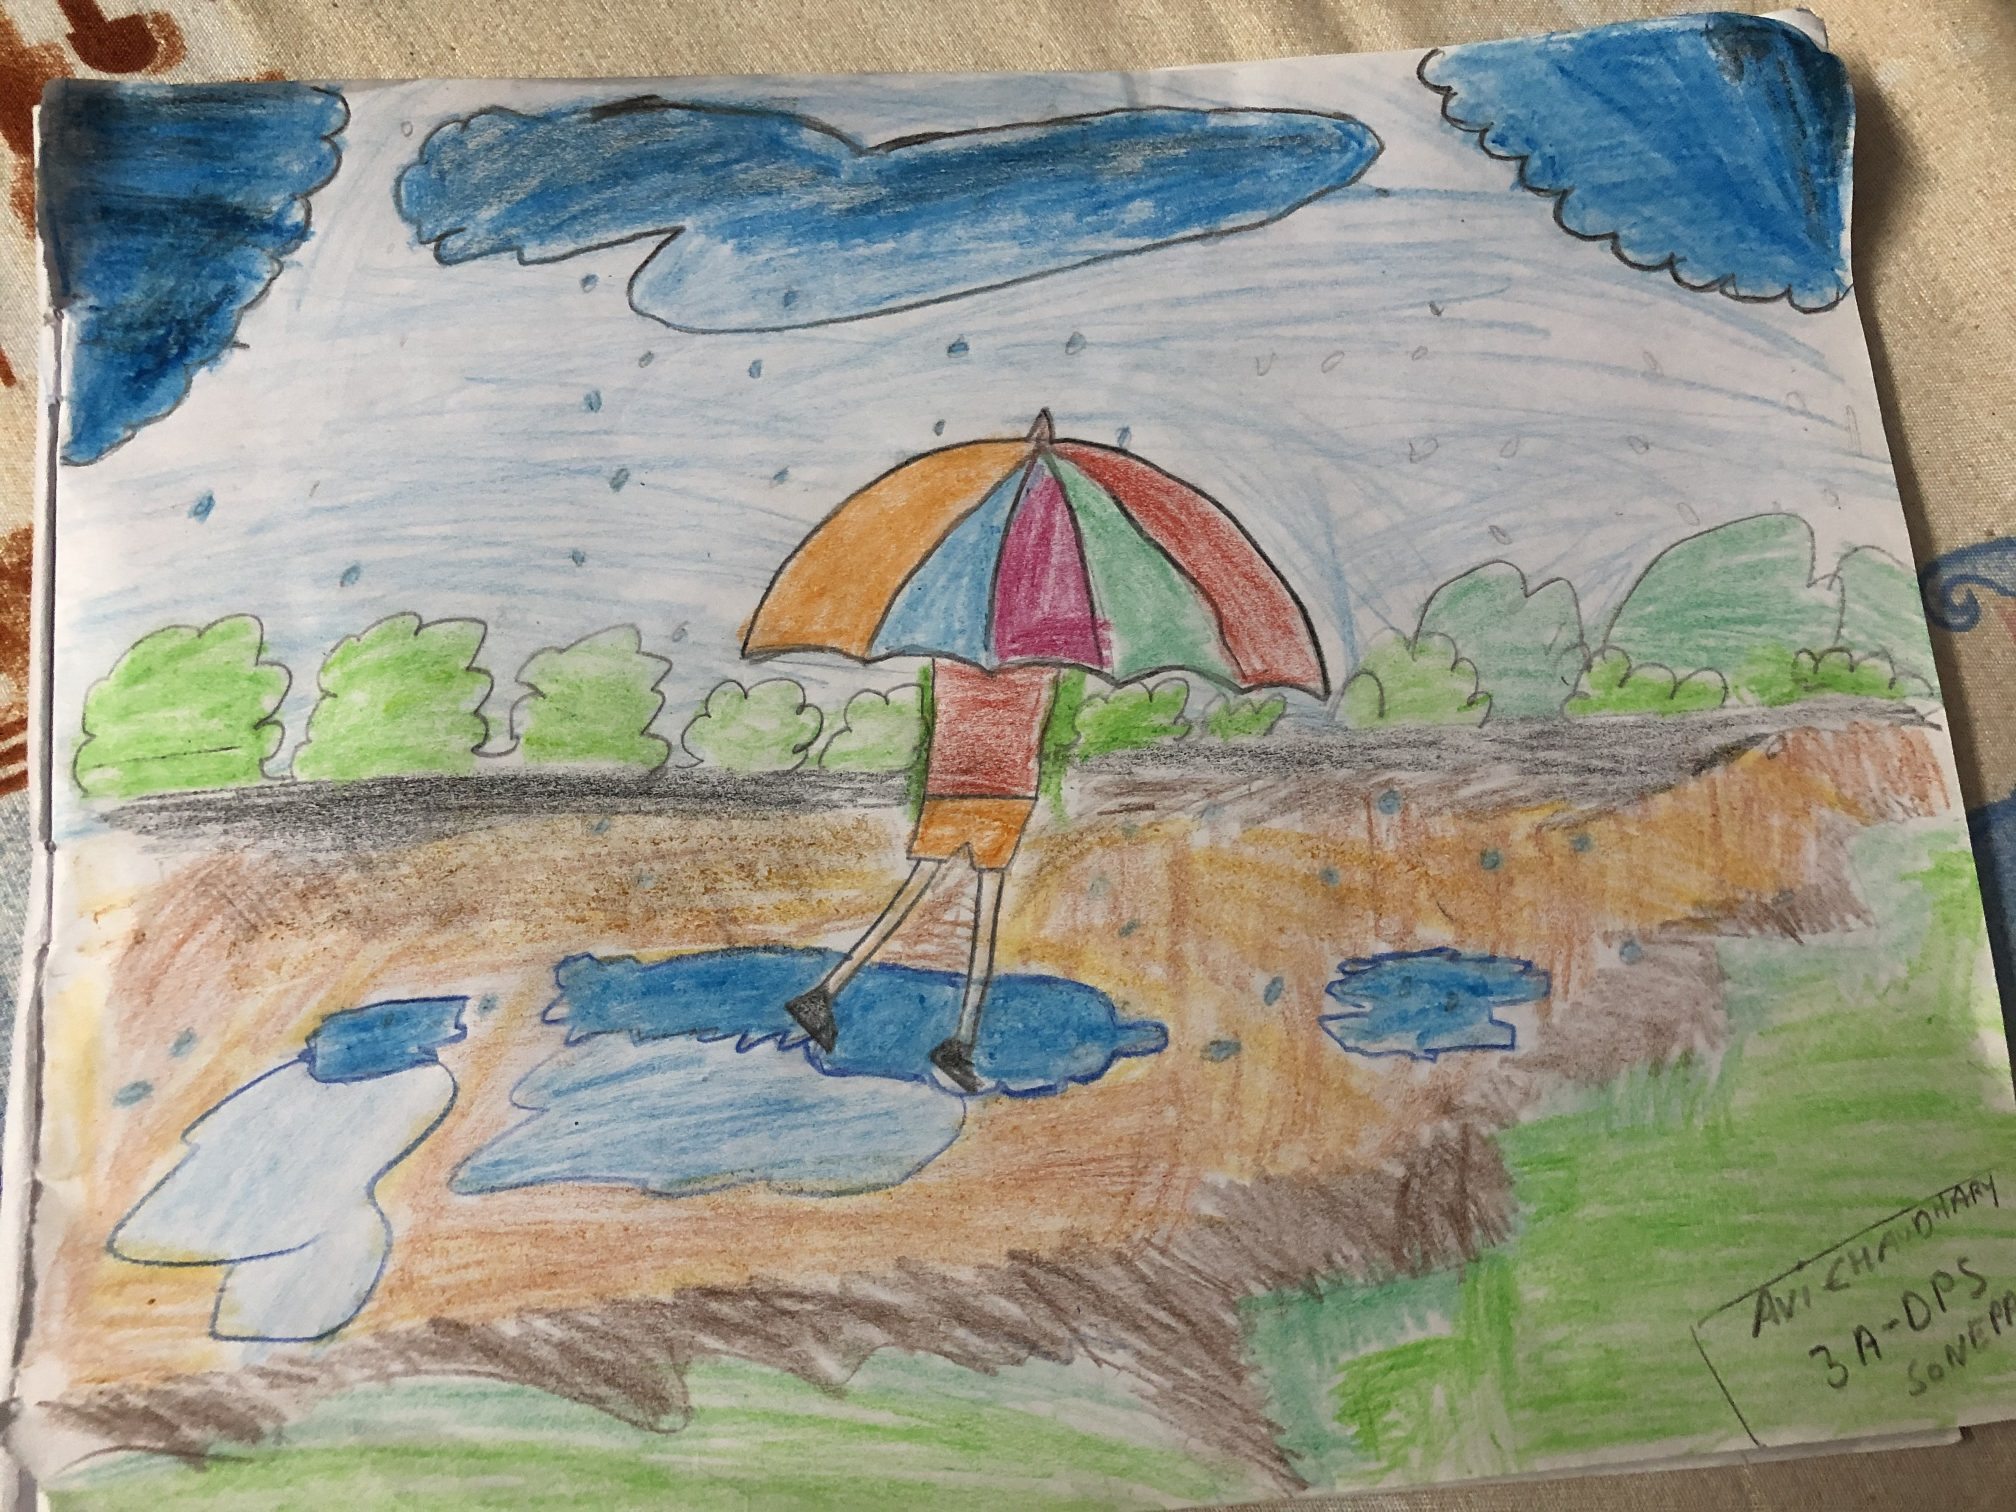 Rainy day drawing/ Rainy season drawing/ How to draw Rainy season memory  drawing using oil pastel